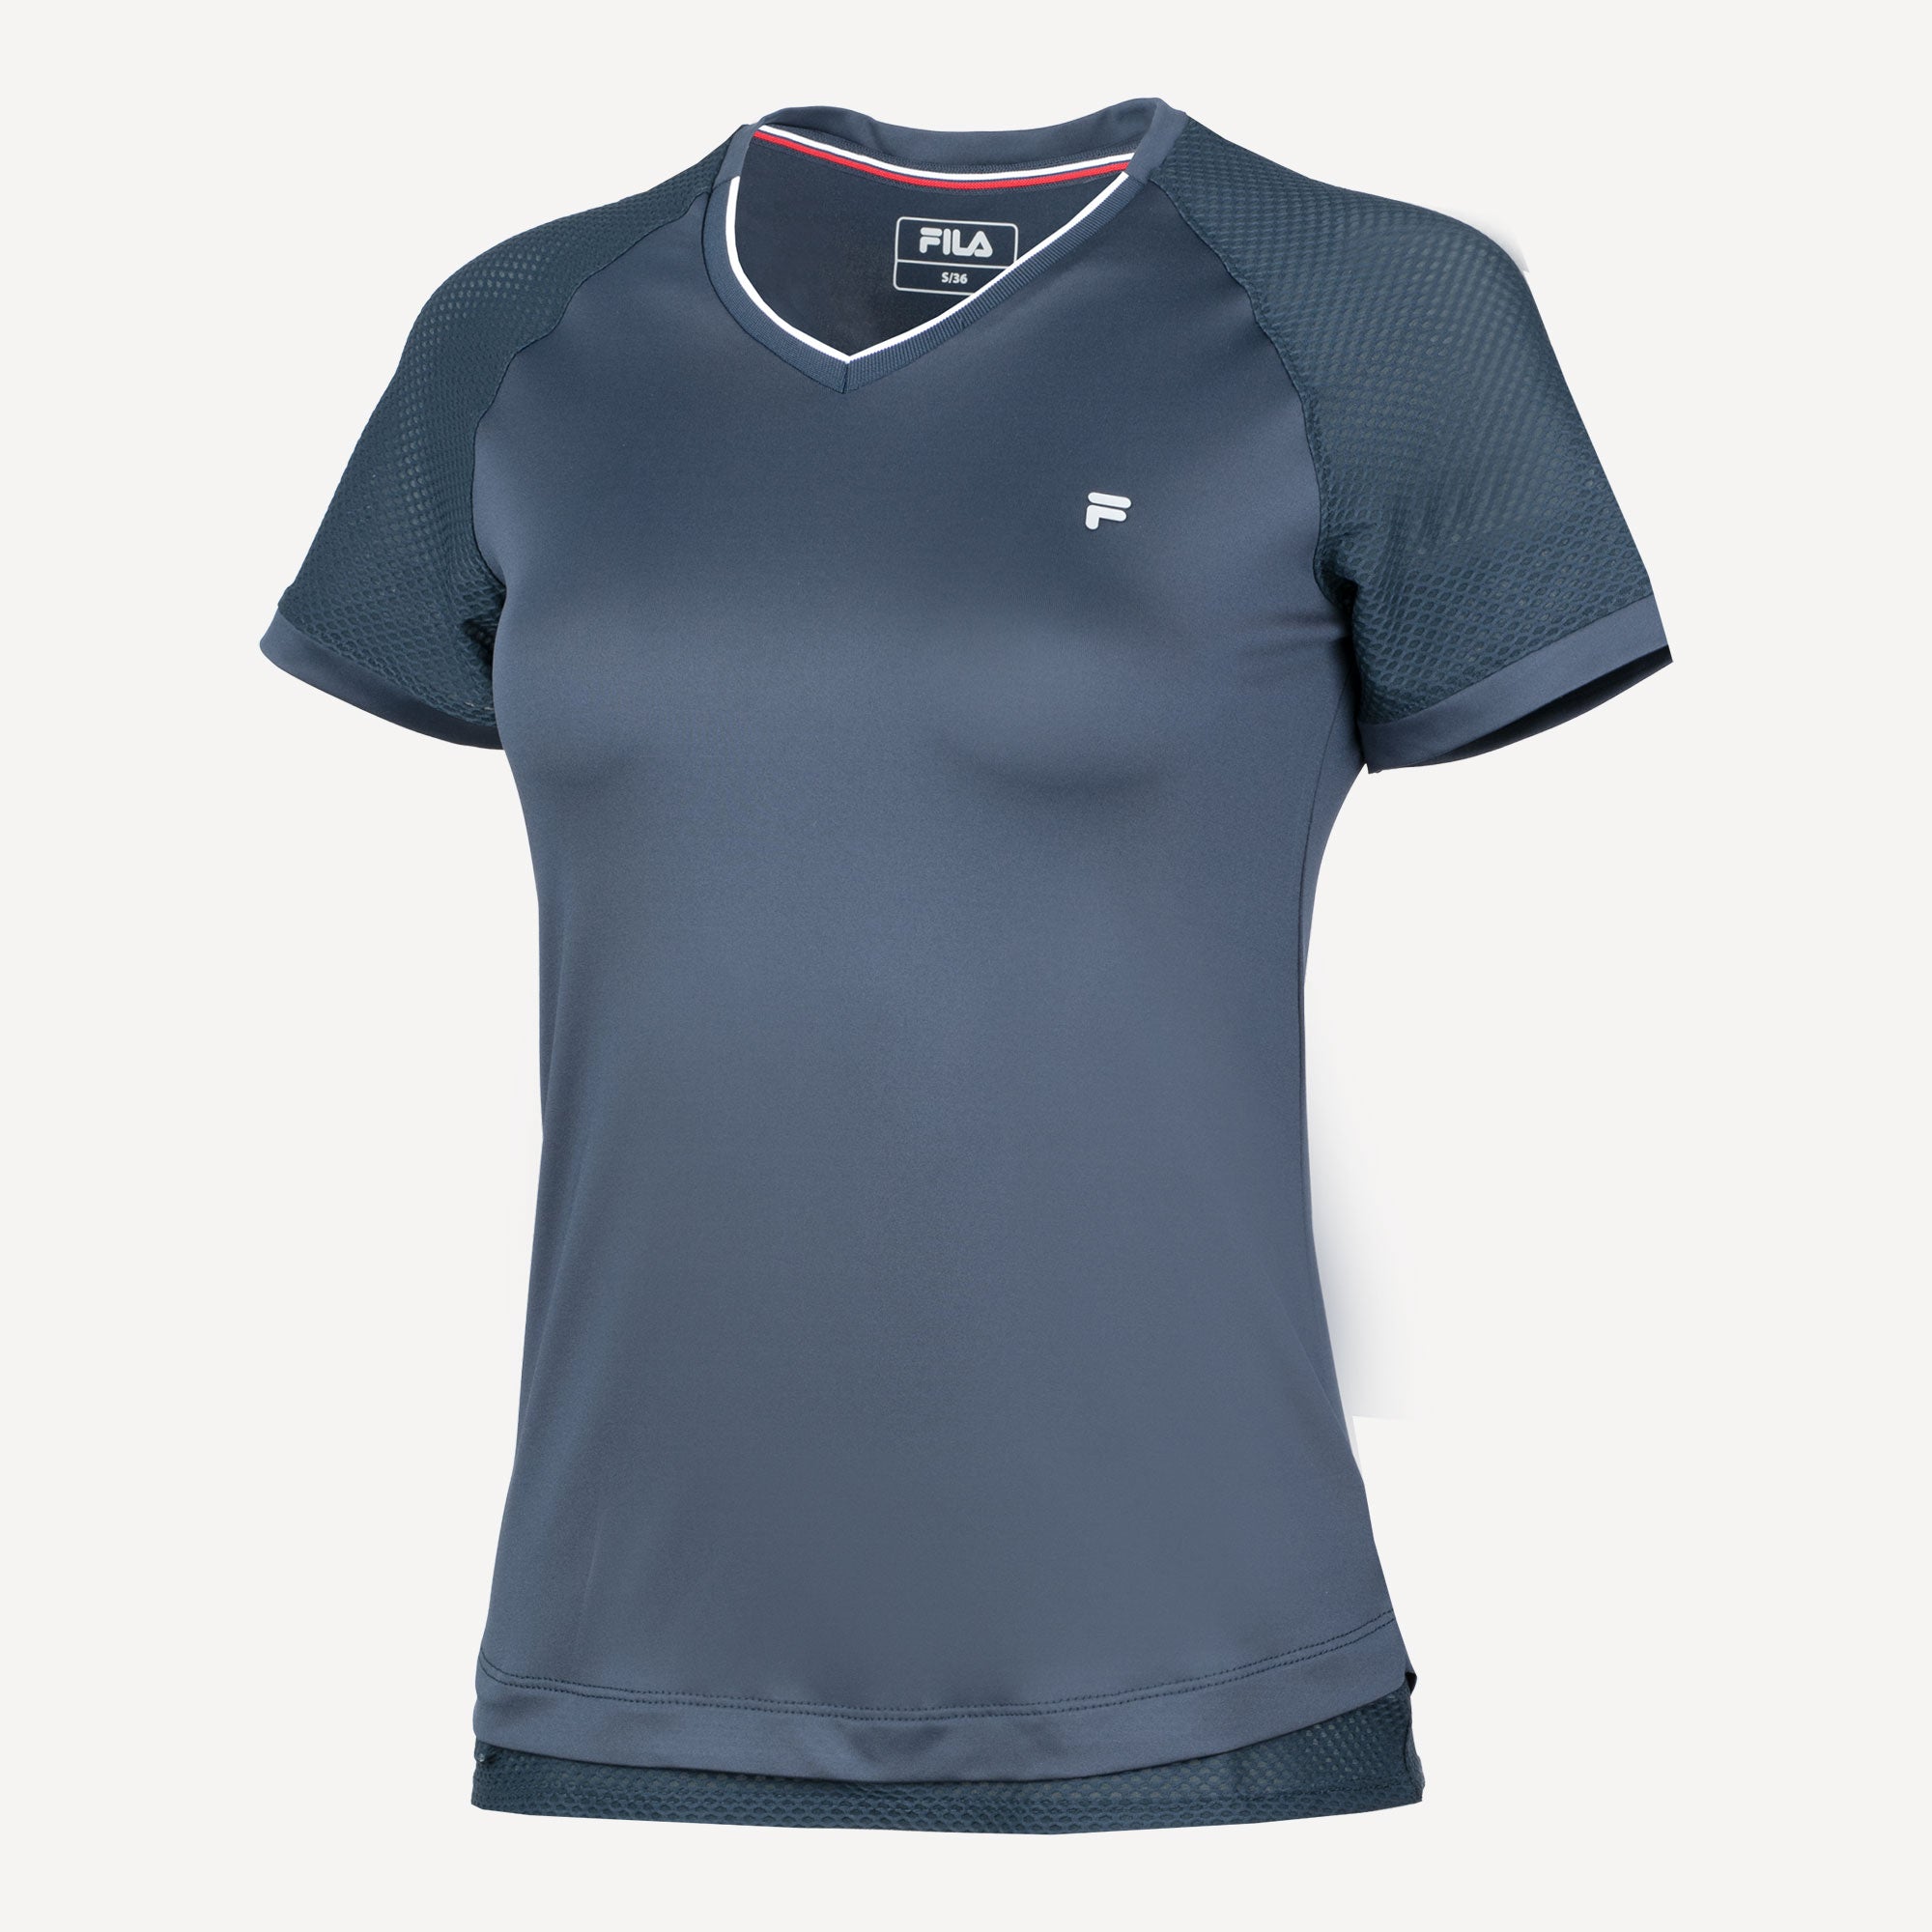 Fila Johanna Women's Tennis Shirt Blue (1)